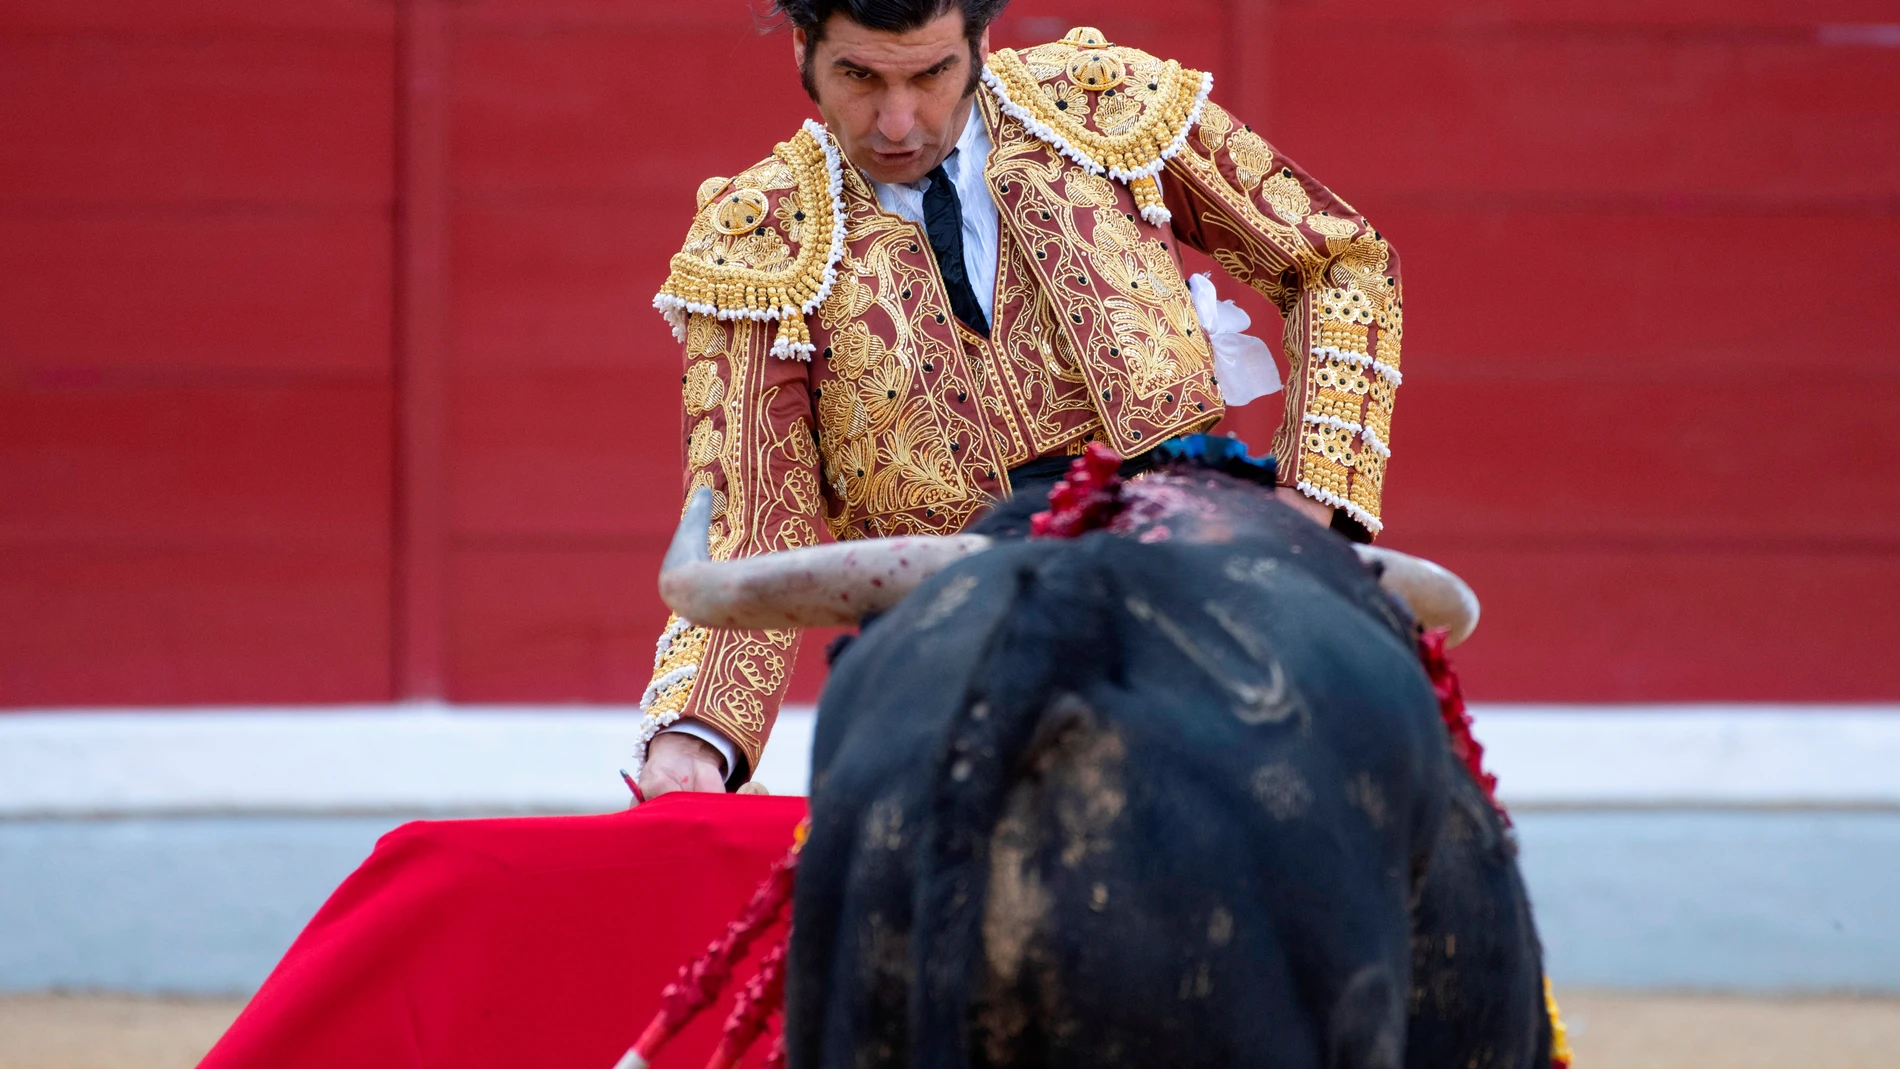 JAÉN, 16/10/2021.- El diestro Morante de la Puebla en su primer toro de la tarde durante la Feria de San Lucas en Jaén,. EFE/José Manuel Pedrosa